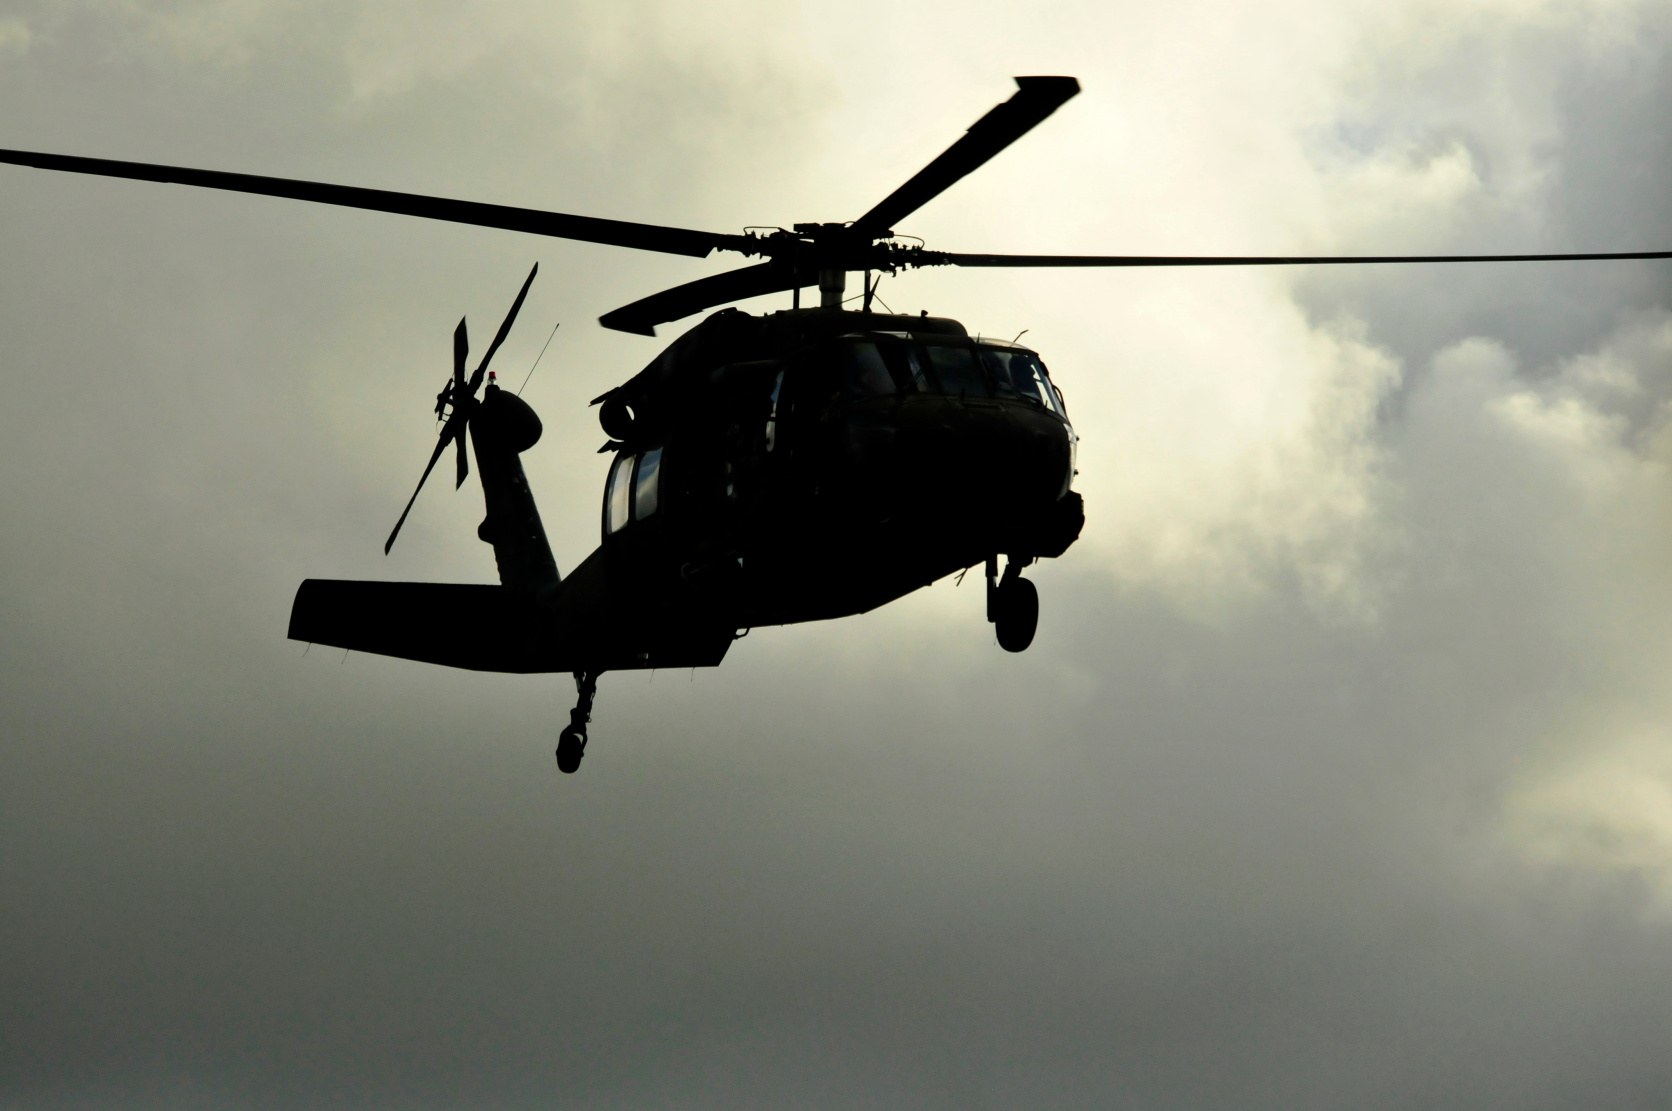 Neobilježeni crni helikopteri opisuju se u teorijama zavjere od 1970-ih